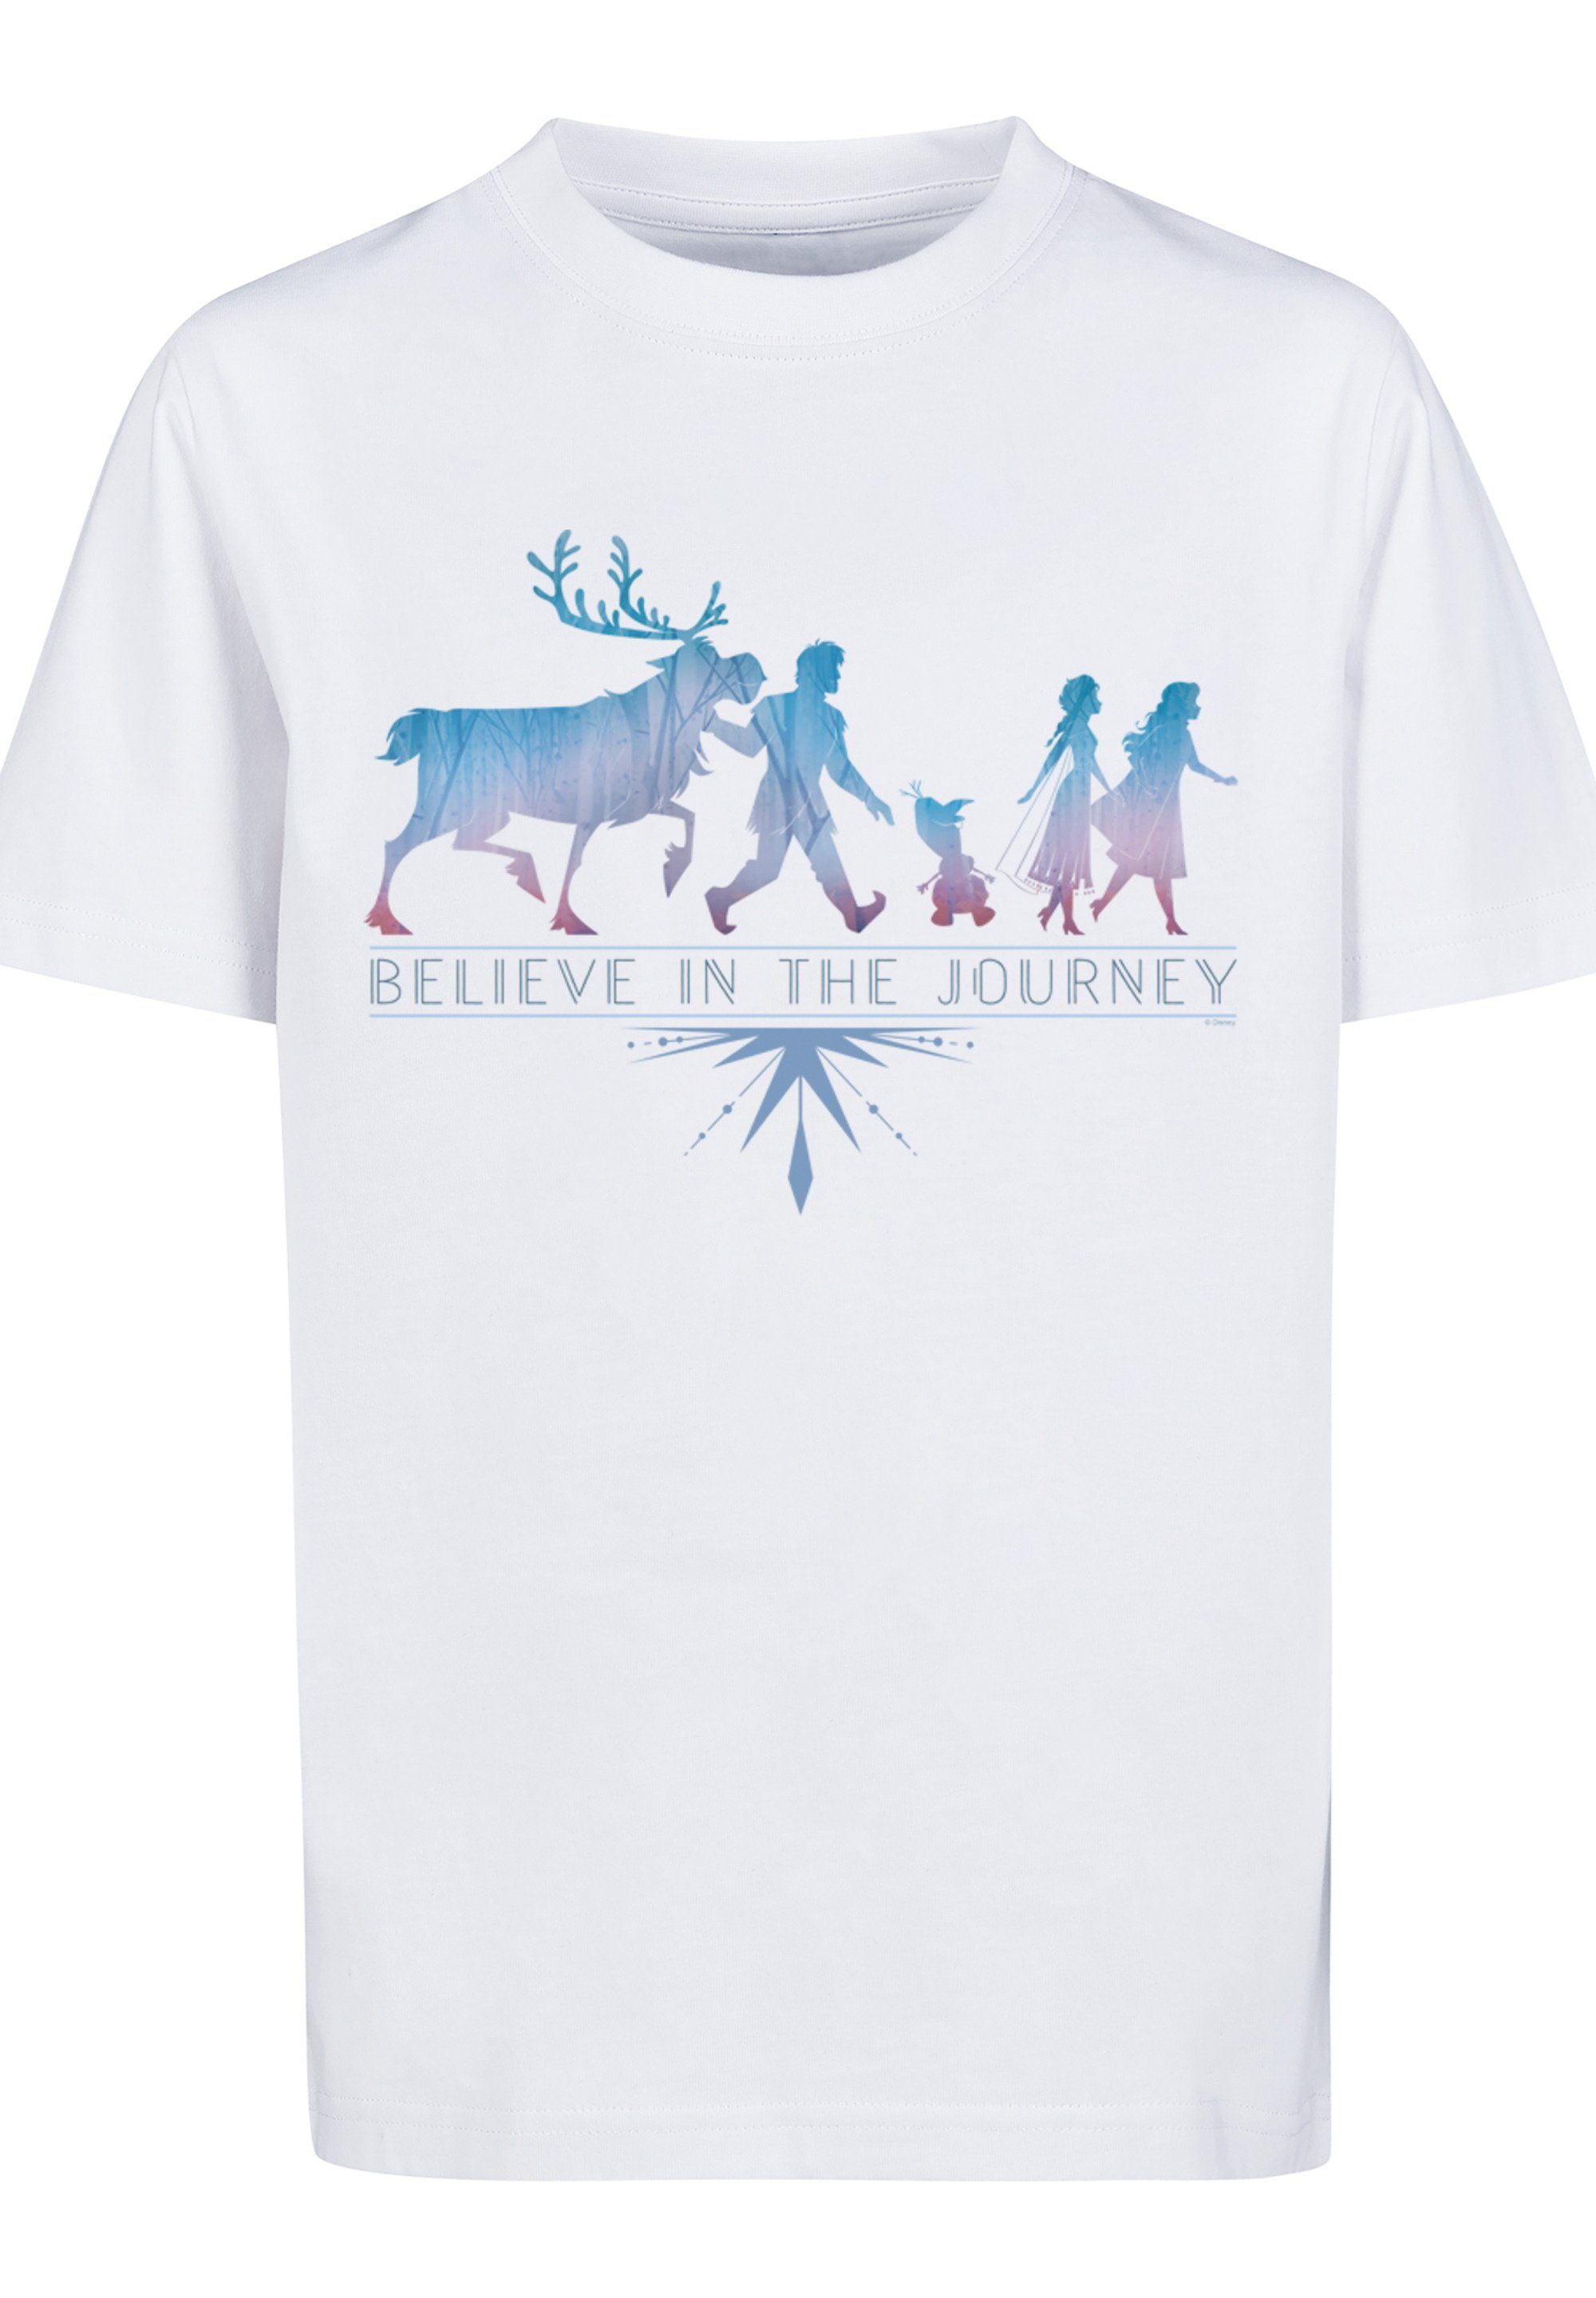 F4NT4STIC T-Shirt In The Unisex Kinder,Premium Frozen Believe 2 Merch,Jungen,Mädchen,Bedruckt Journey weiß Disney